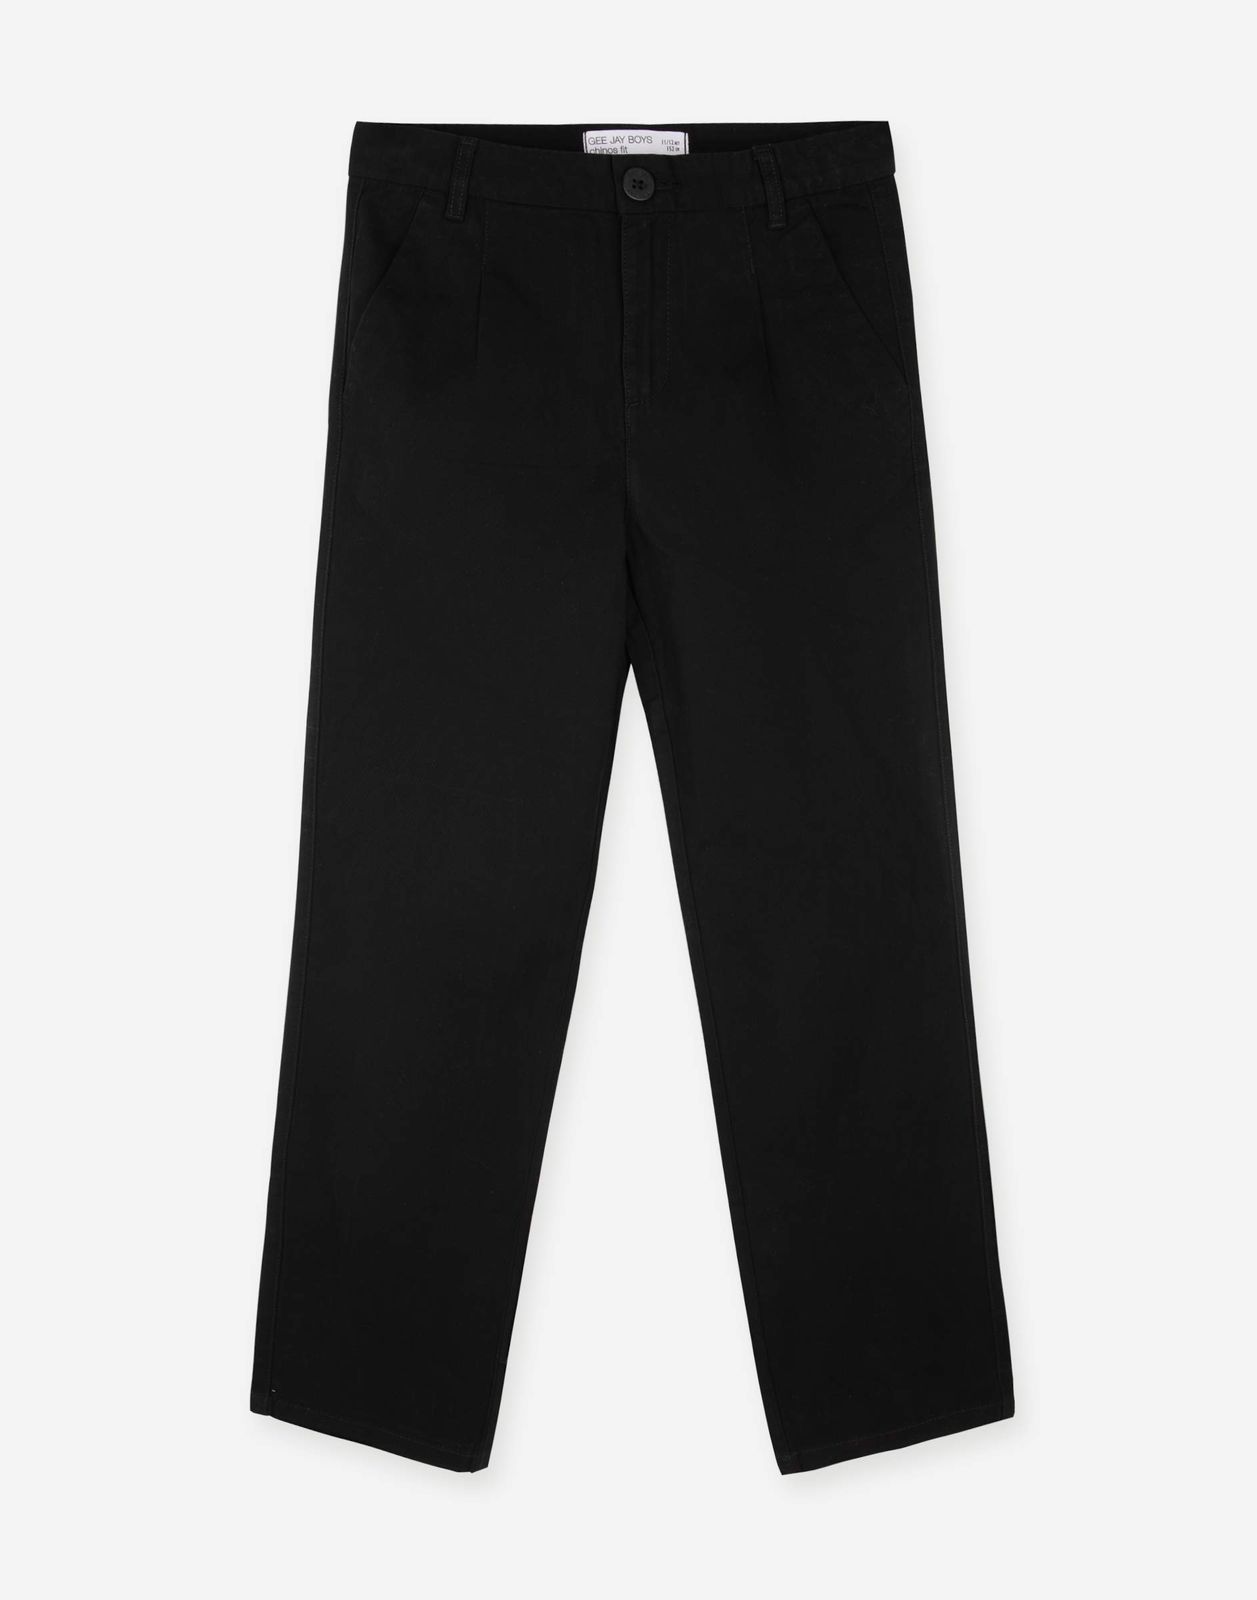 Чёрные школьные брюки-чиносы Straight для мальчика BSU000185-3 купить поцене от 1499 рублей с доставкой по России